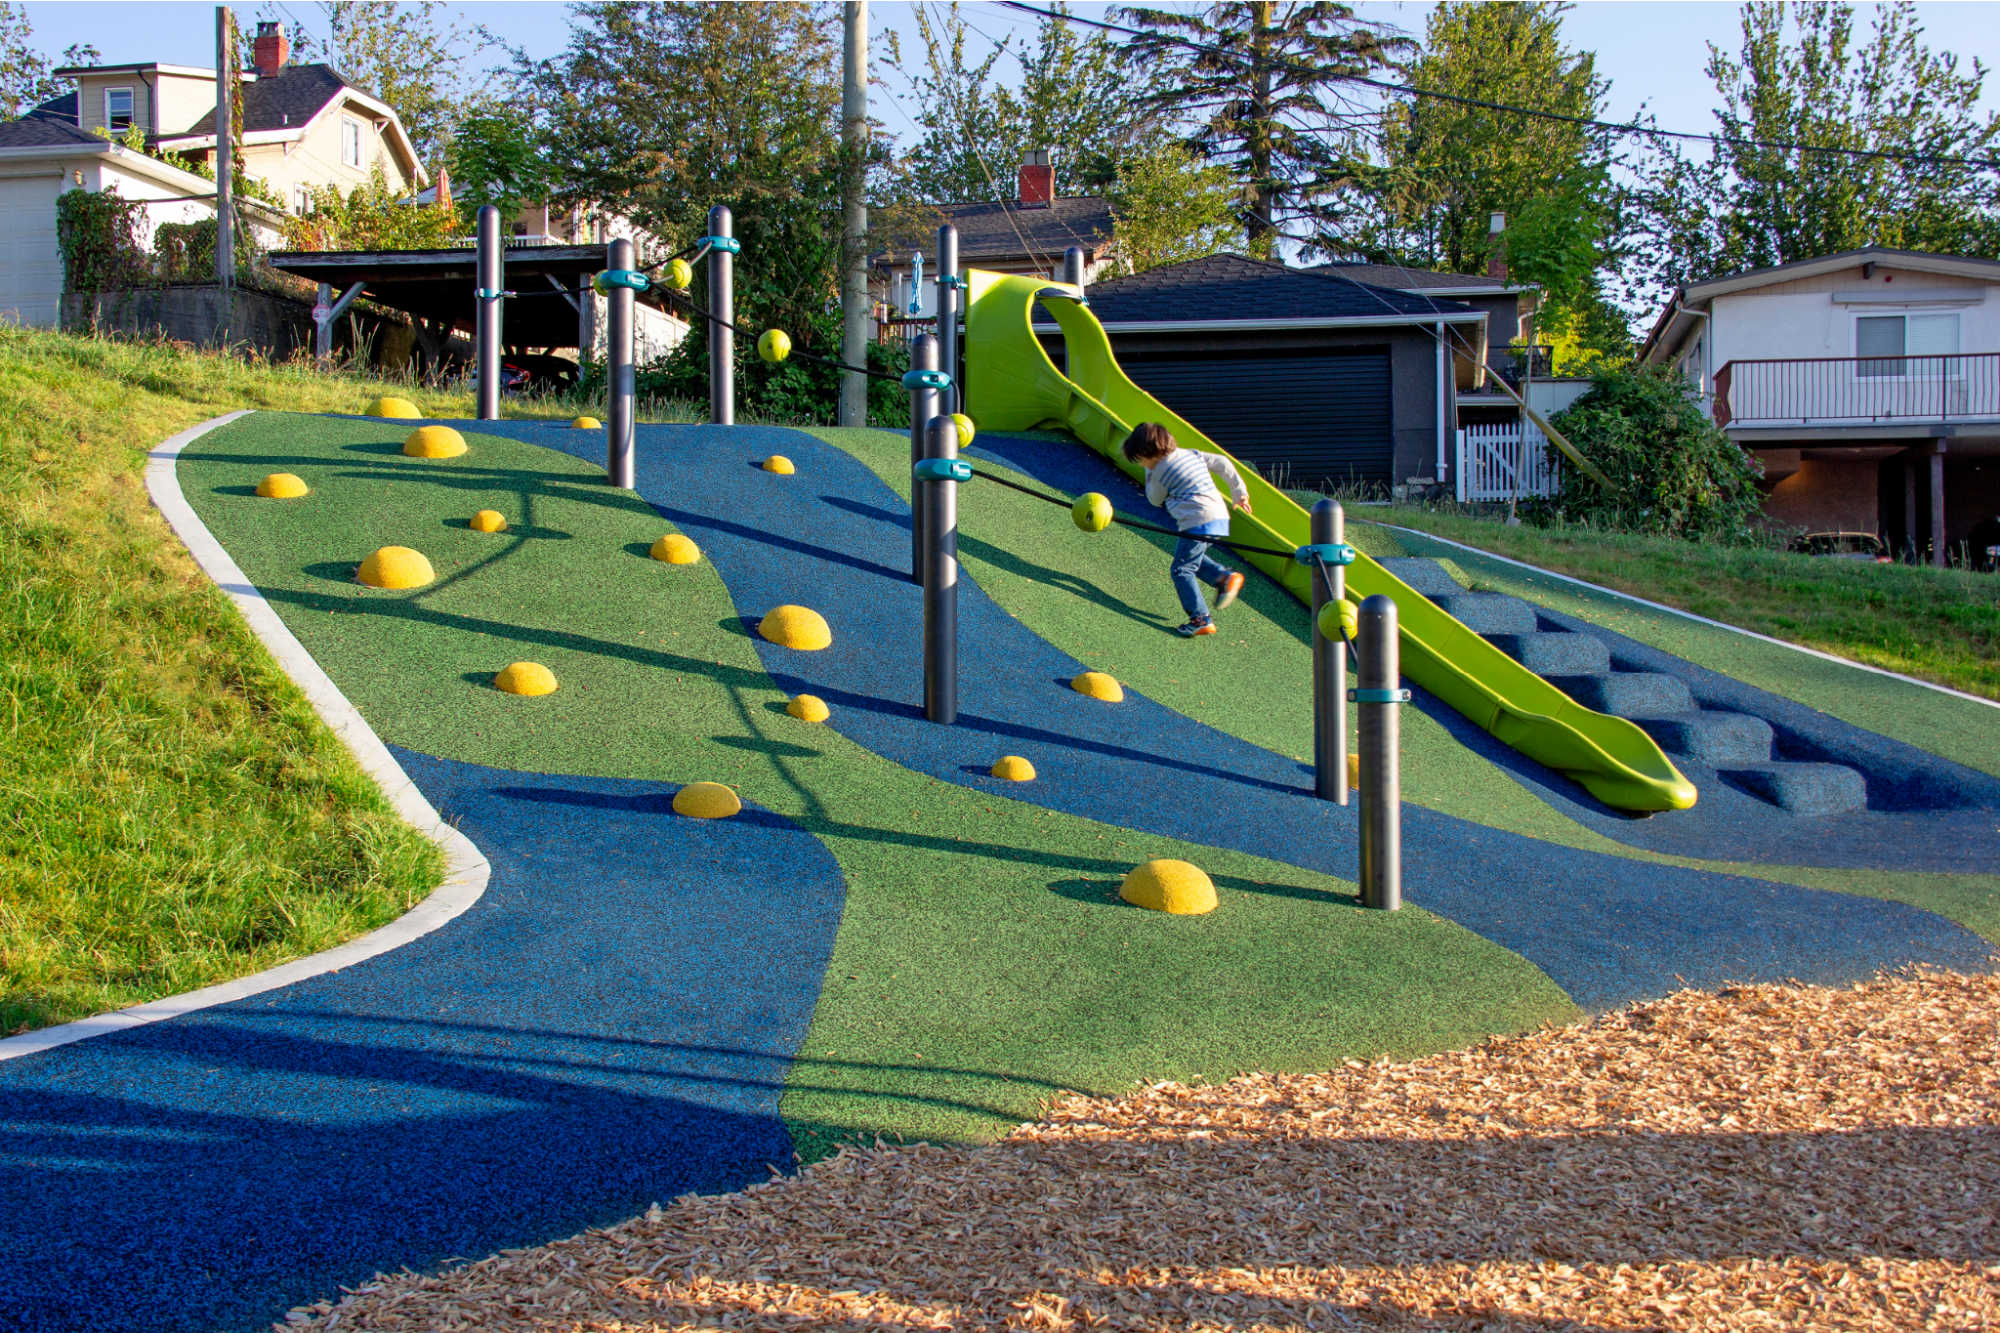 Kalso Park Playground